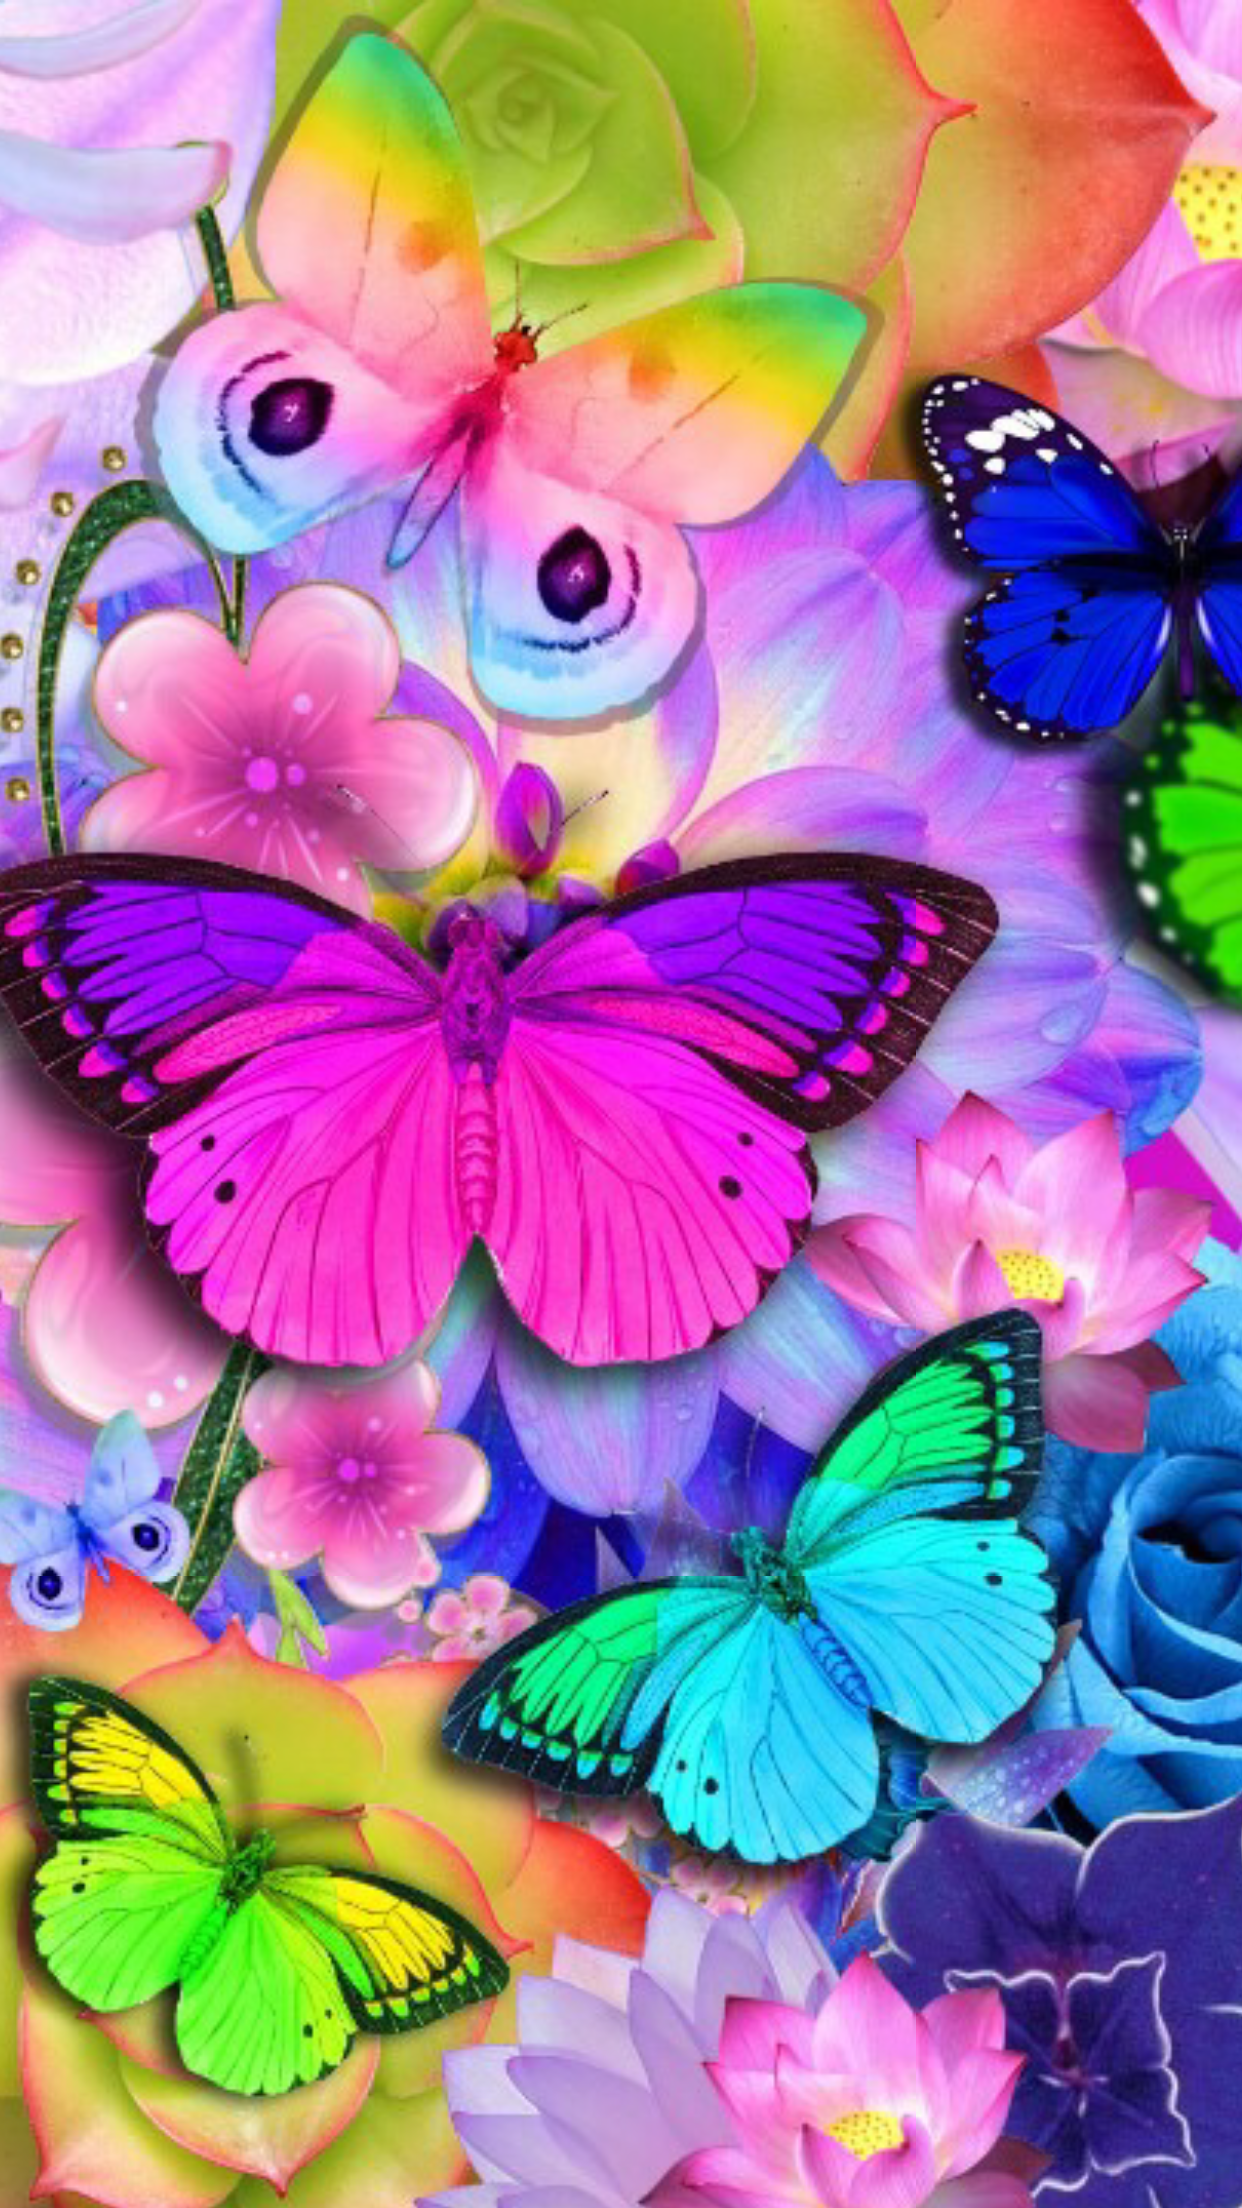 Pink Butterfly Artist Unknown - HD Wallpaper 